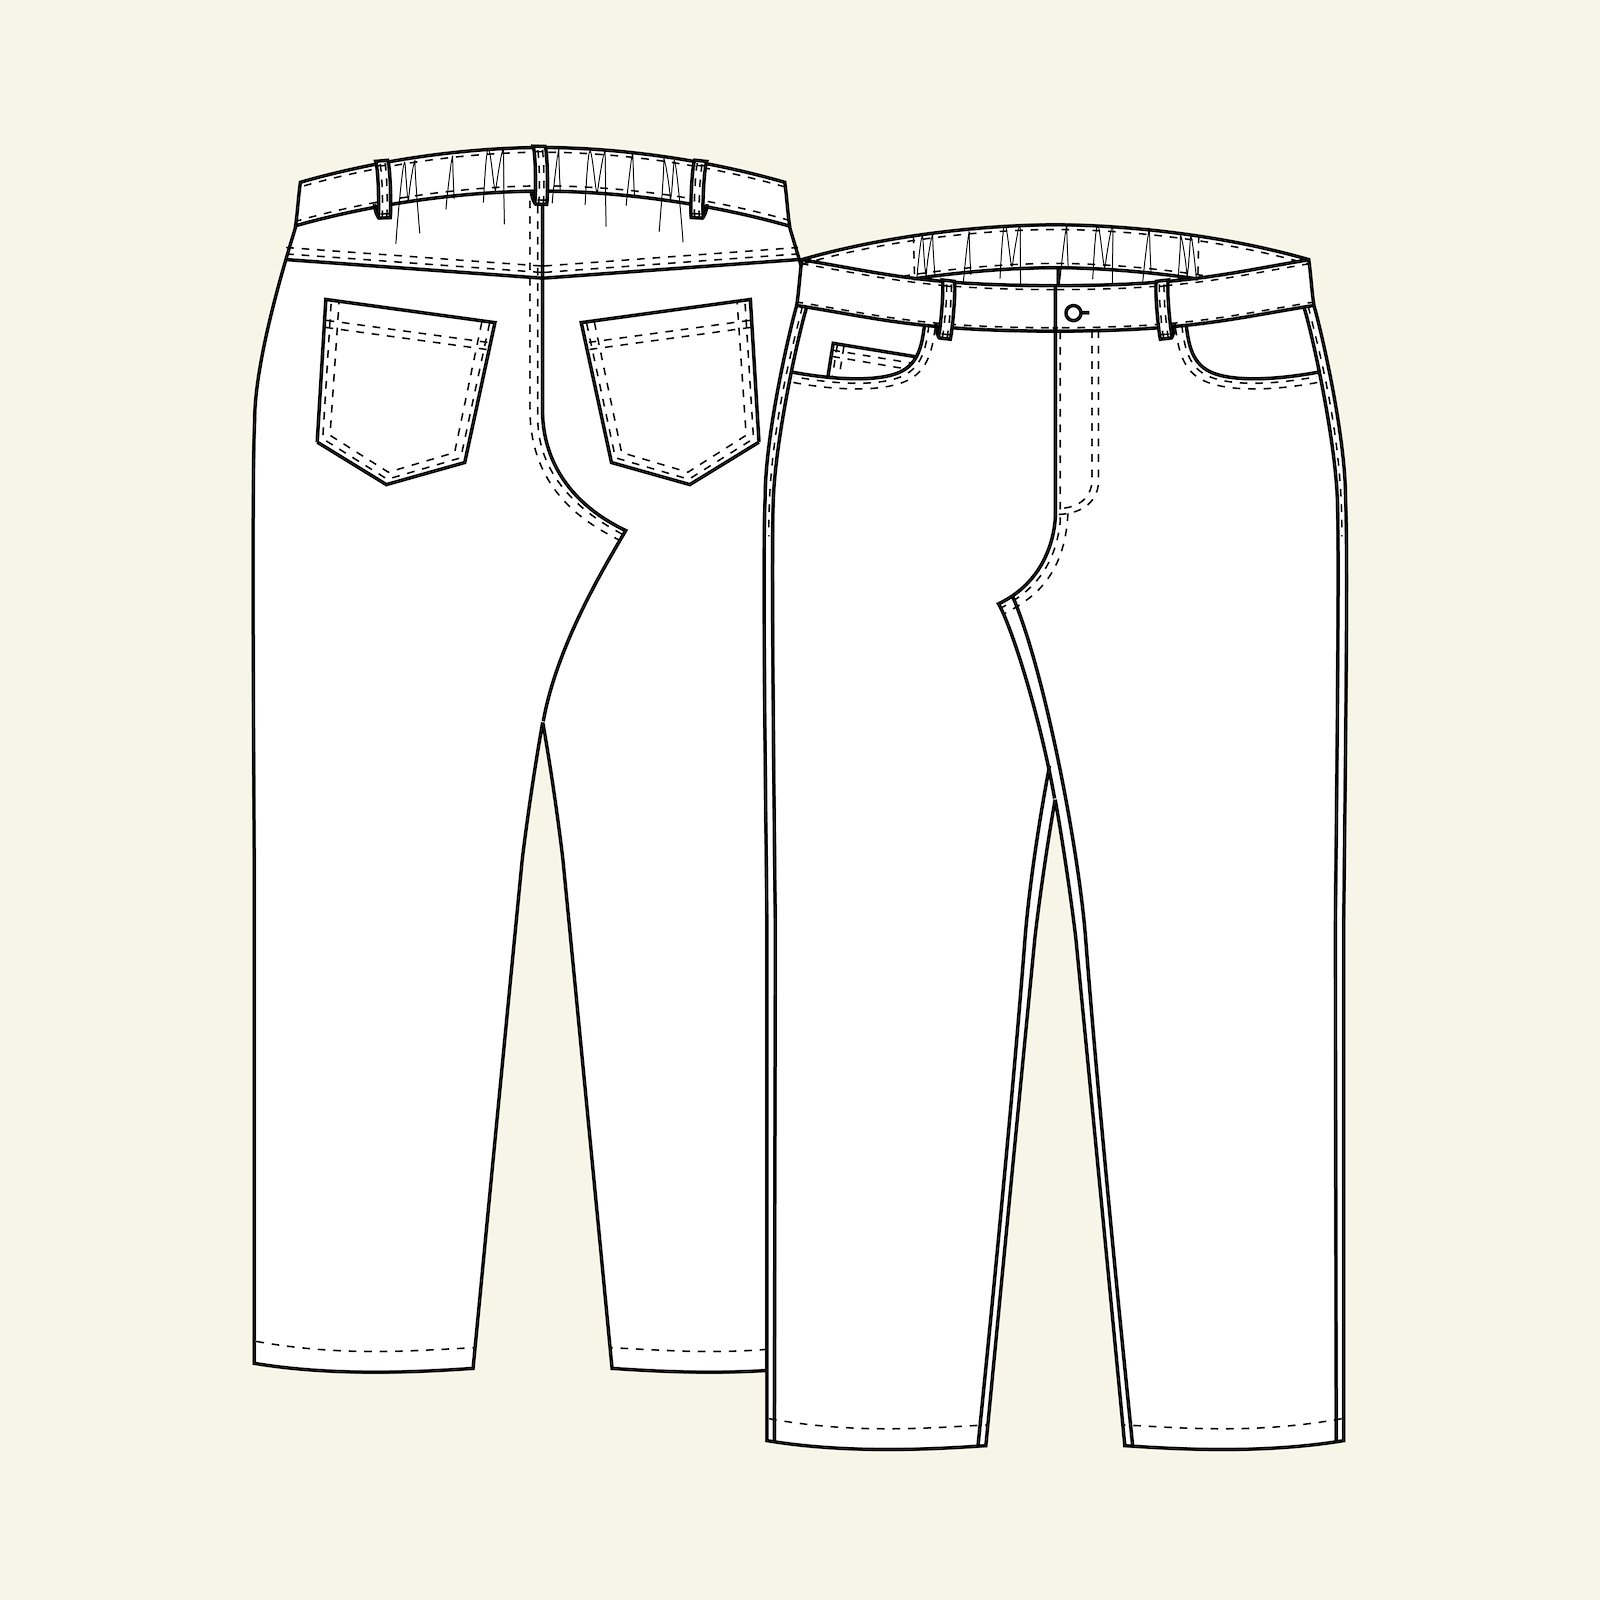 Klassisk jeans m/ strikk i linning b, 50 p70007000_p70007001_p70007002_p70007003_p70007004_pack_b